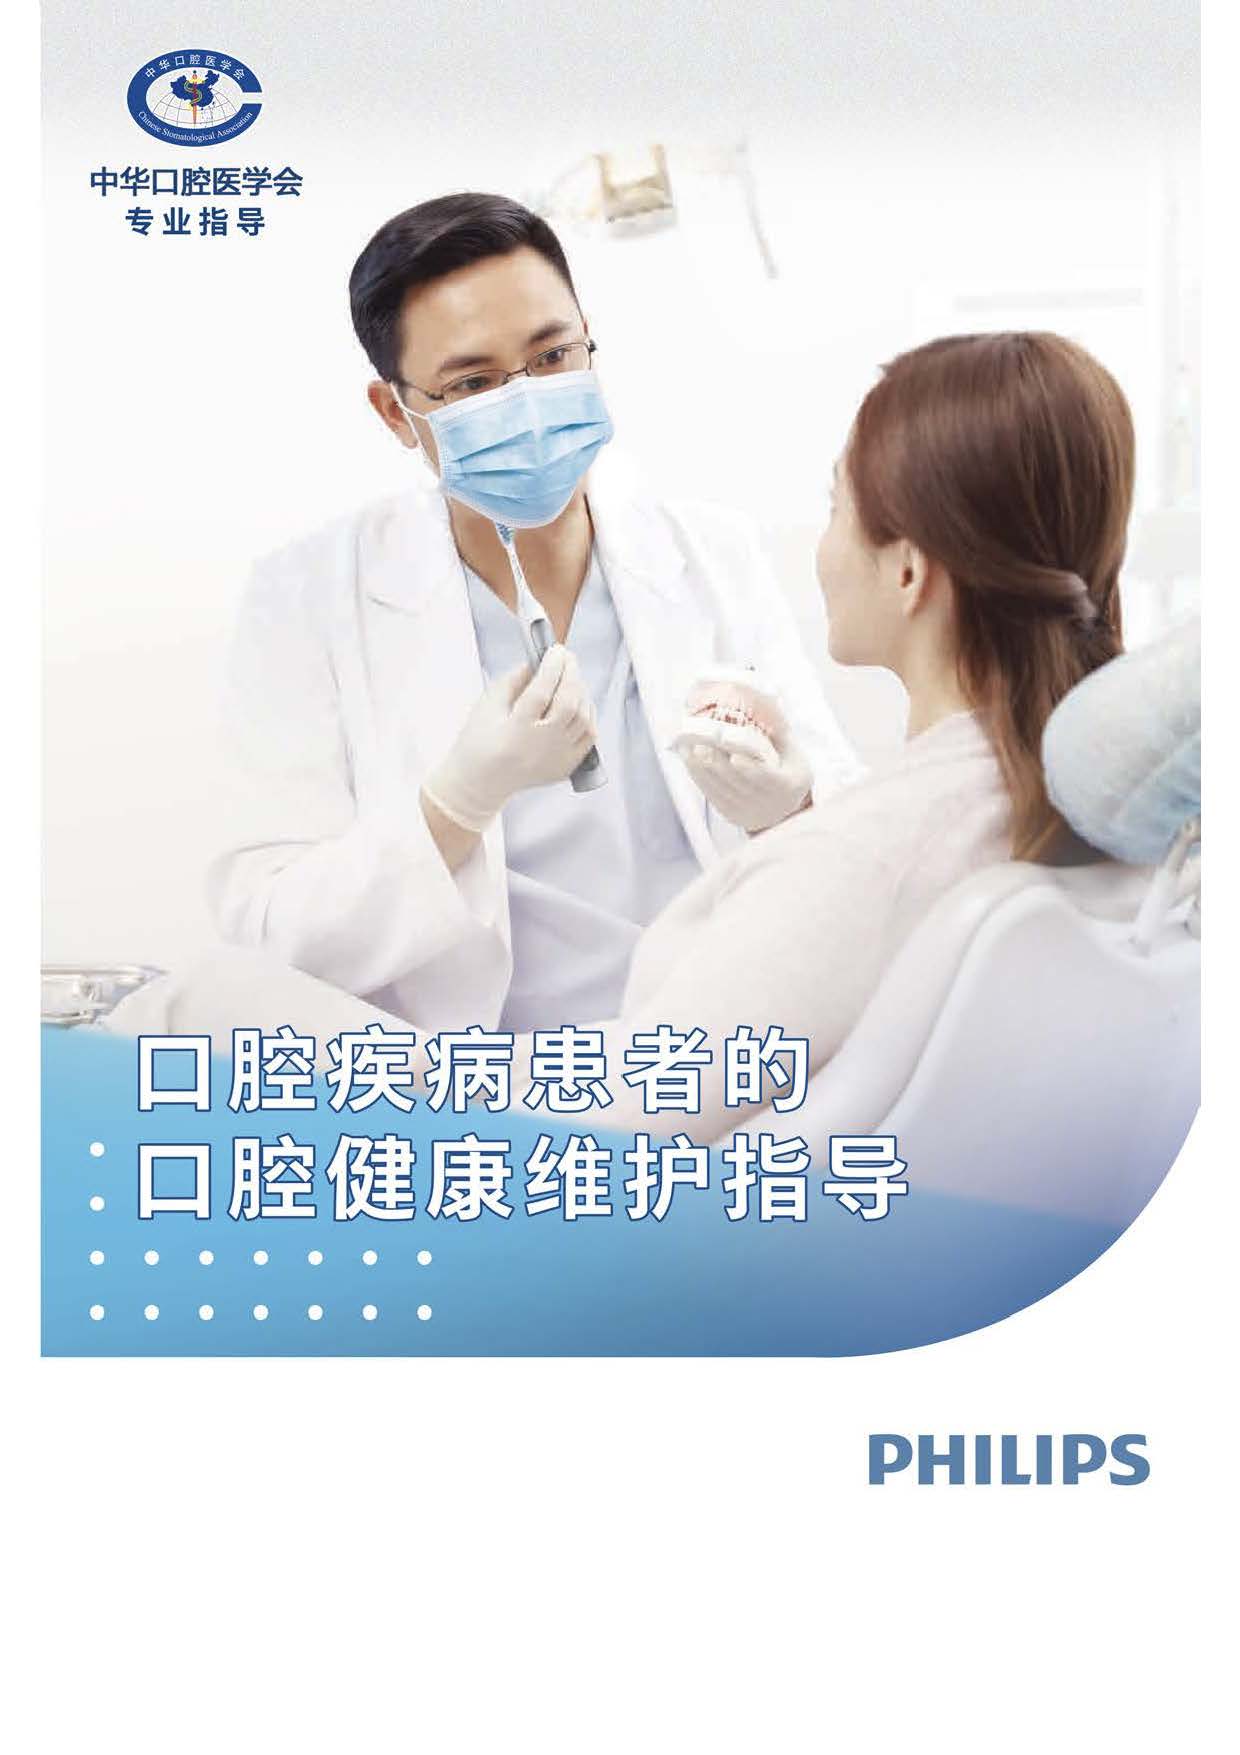 《口腔疾病患者的口腔健康维护指导》手册发布